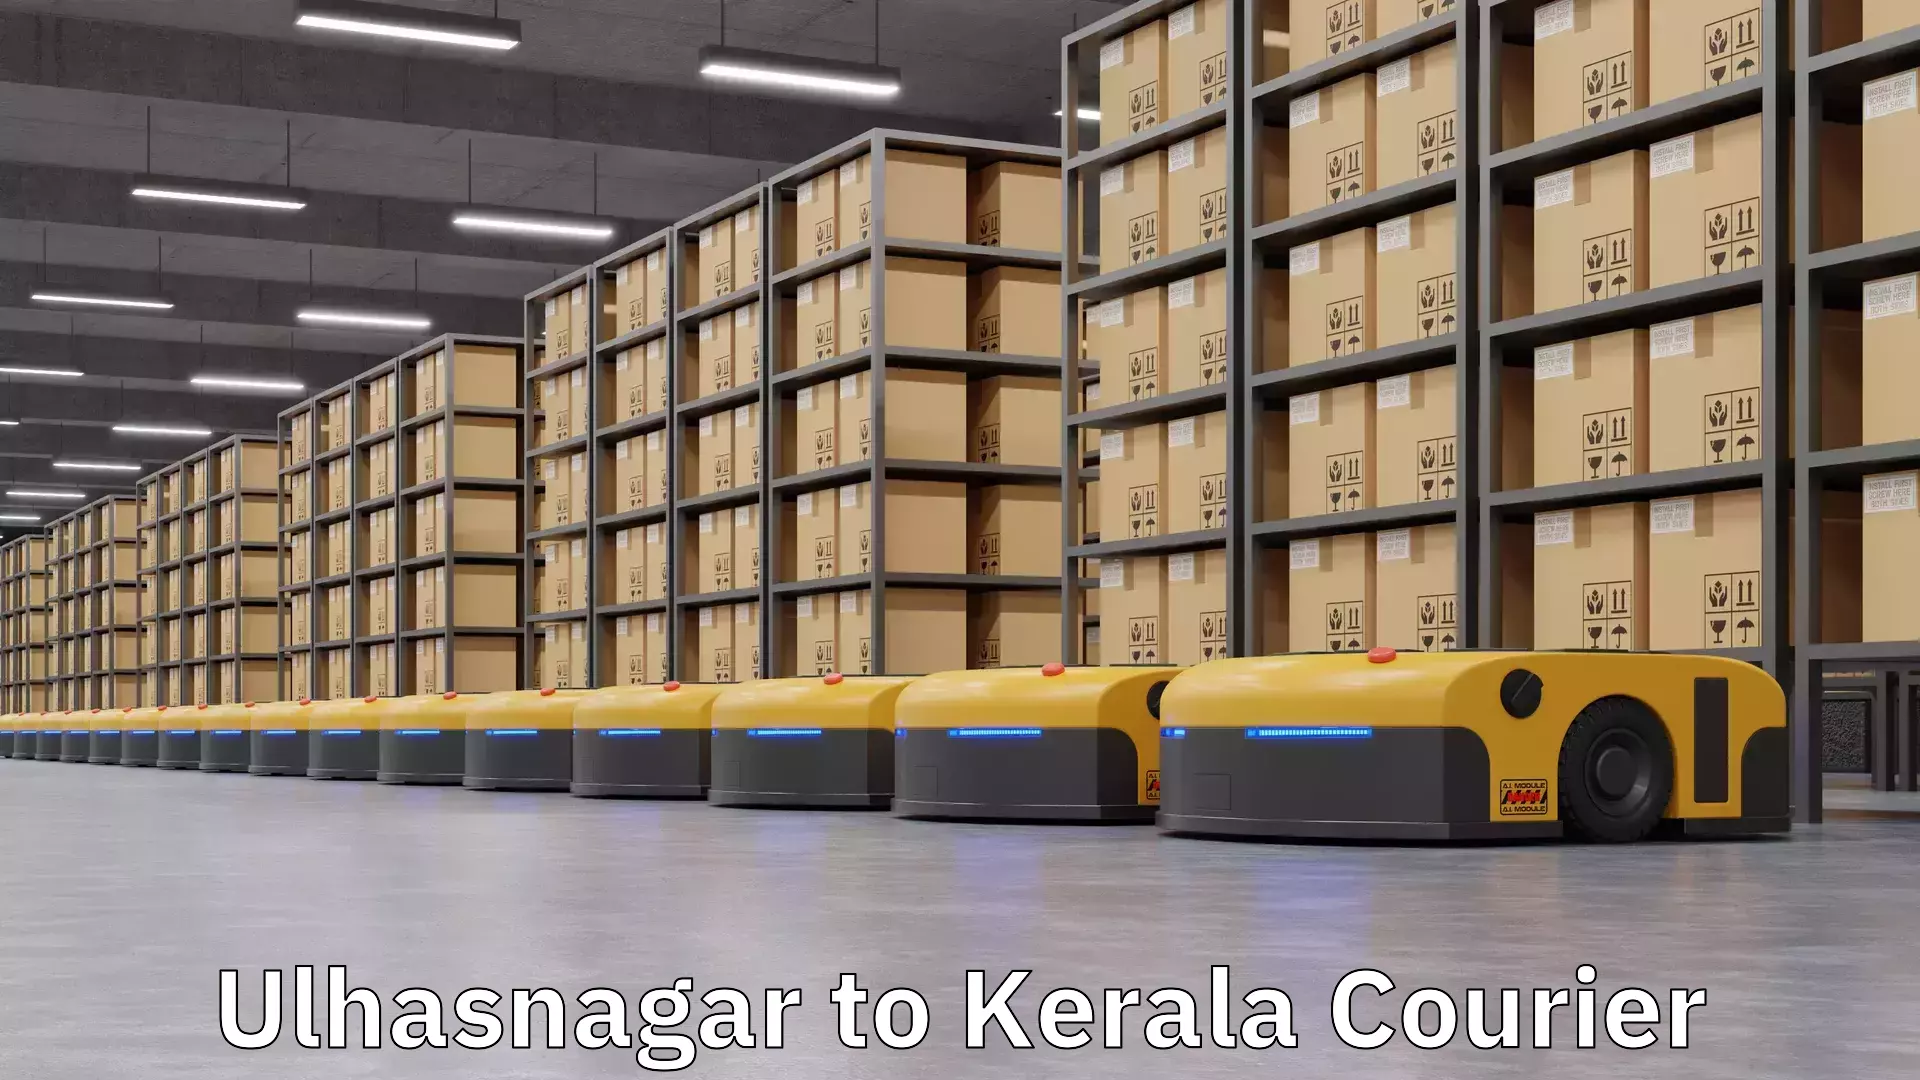 Customizable shipping options Ulhasnagar to Kerala